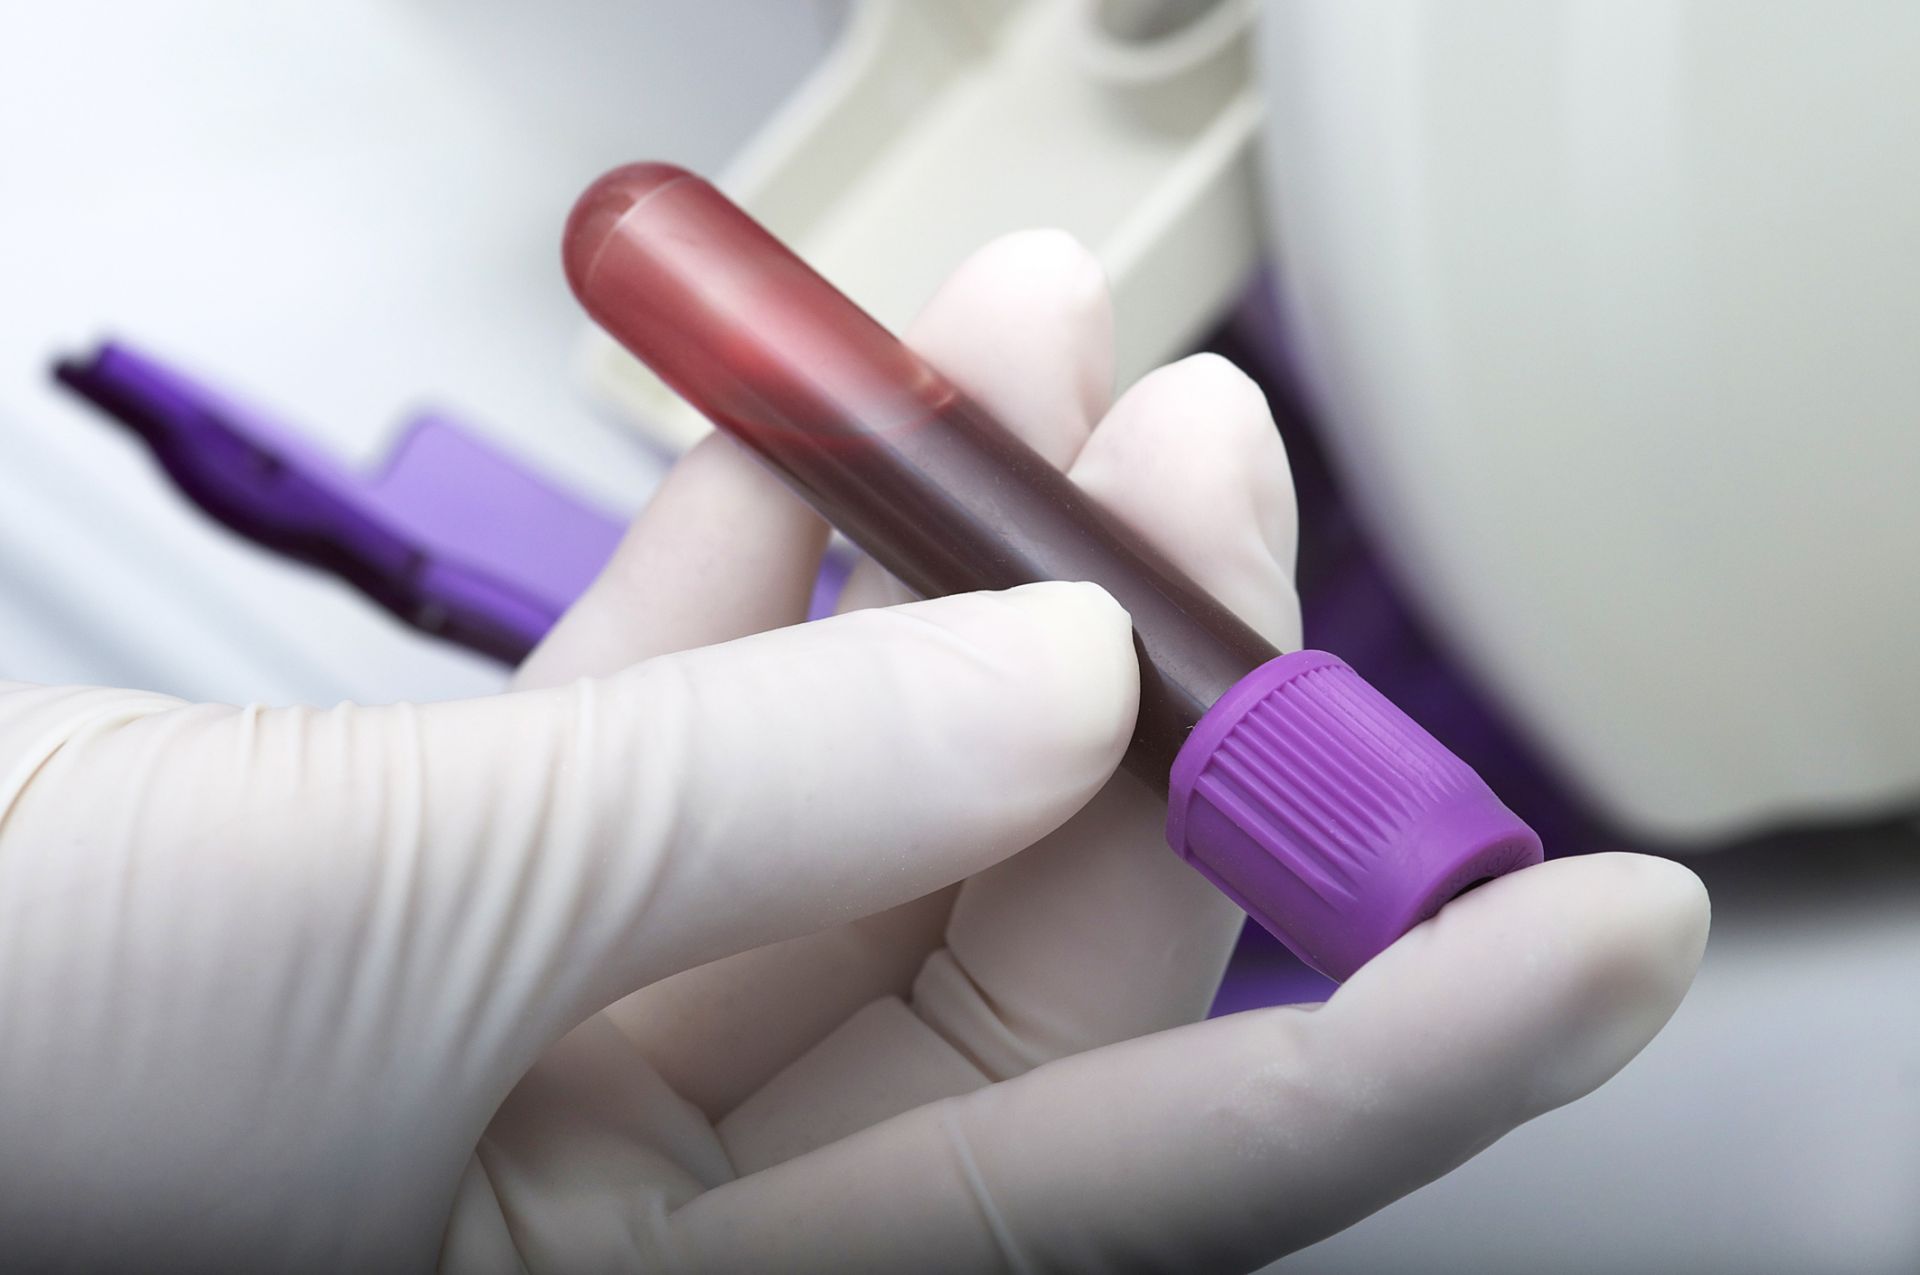 Република Турция ще дари на България лични предпазни средства и диагностични тестове за новия коронавирус COVID-19